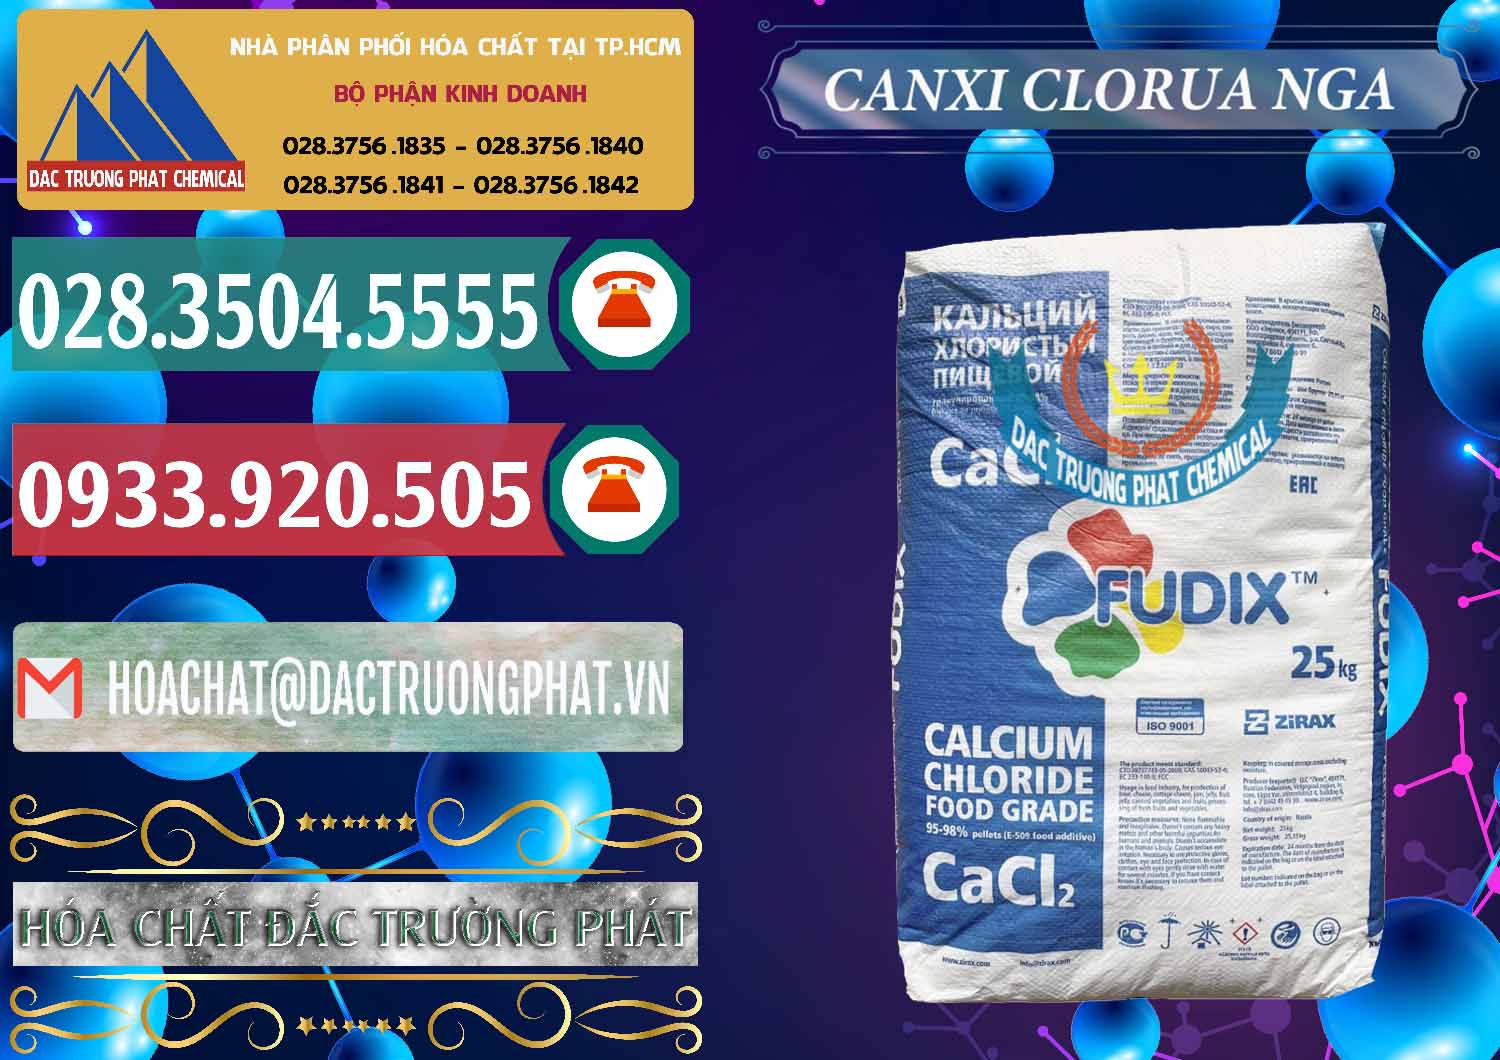 Công ty bán ( phân phối ) CaCl2 – Canxi Clorua Nga Russia - 0430 - Nơi chuyên nhập khẩu _ phân phối hóa chất tại TP.HCM - muabanhoachat.vn